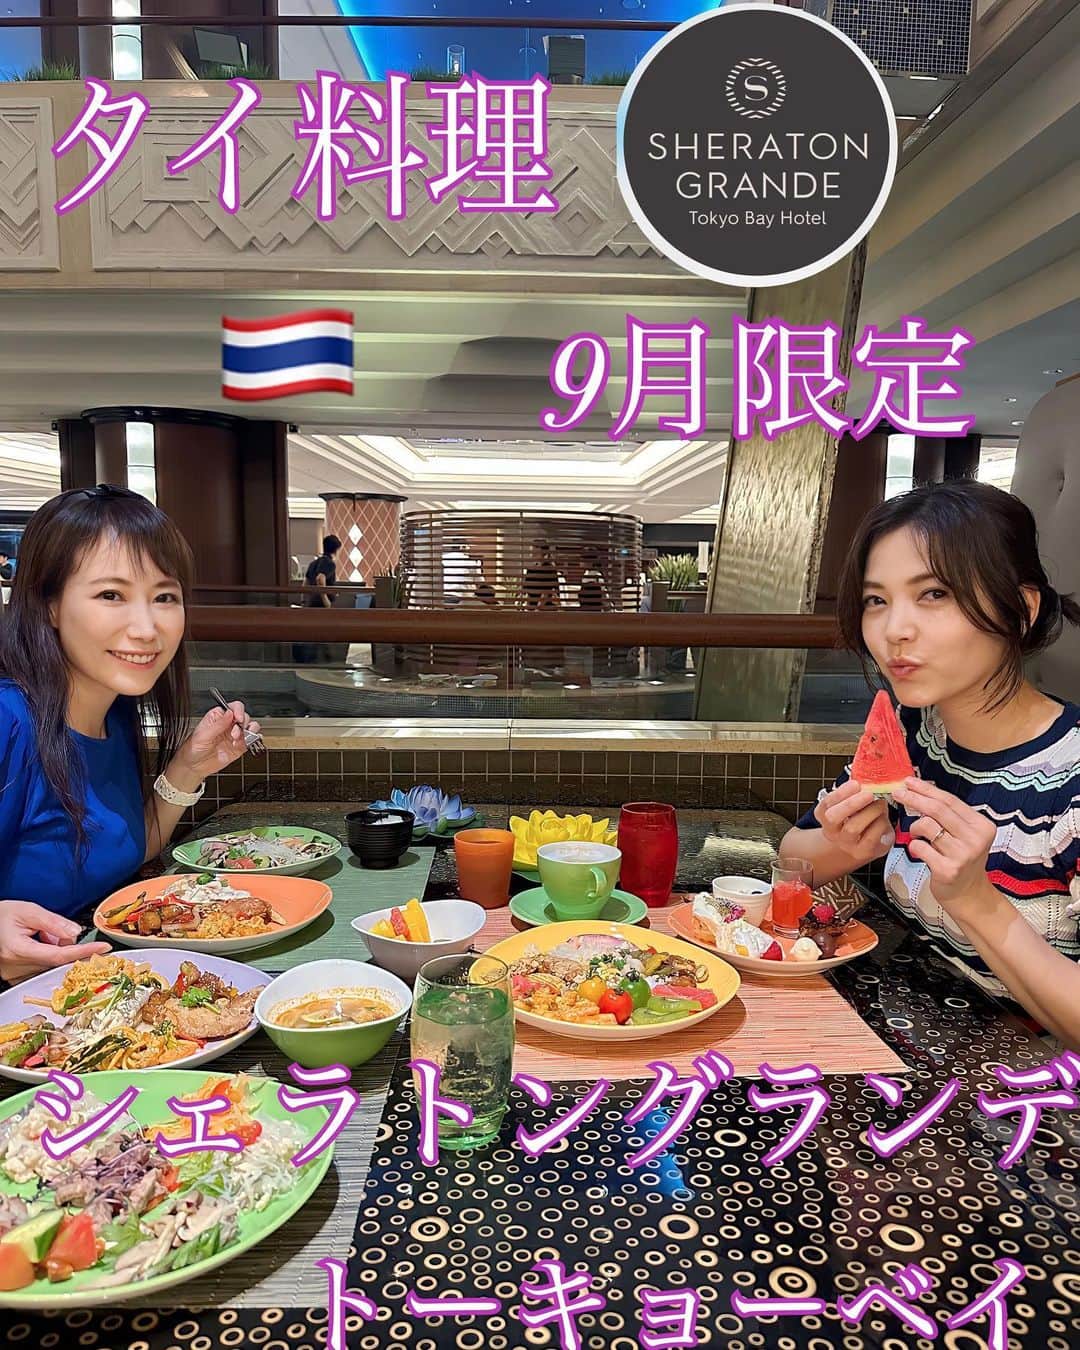 イトウジュン（タイ料理研究家）のインスタグラム：「続き  シェラトン・グランデ・トーキョーベイ・ホテル/Sheraton Grande Tokyo Bay Hotel (OFFICIAL)にいます — シェラトン・グランデ・トーキョーベイホテルが9月限定のタイフードビュッフェ開催中🇹🇭🫚🫛 クオリティ高くてタイ料理のメニューもとにかく種類が多い‼️ タイのローカルフードや郷土料理をオリジナルアレンジした日替わりメニューや、『ミシュランガイド北陸2021特別版』にミシュランプレート店として掲載された、富山県のタイ料理専門店「喃楽（なんらく）」の中川幸夫シェフとコラボメニューもあり✨✨😋🇹🇭  グリーンカレーやトムヤムラーメン、プーパッポンカリーも本場の美味しさ😋  レッドカレーのスパゲティや ガパオのピッツァなどもあり  タイのスイーツ🍰もめーーっちゃ種類があって感激🤩  さらに期間中、ホテル2階ロビーでタイ伝統舞踊🪭のパフォーマンスあり トゥクトゥクもあって写真撮影もできます📷  9月1日〜30日 ブッフェ・ダイニング『グランカフェ』 ランチ　4500円　11時半〜14時半　90分制 ディナー　6800円　17〜21時半　120分制  #シェラトングランデ東京ベイ  #シェラトングランデトーキョーベイホテル  #タイ料理  #タイ料理好きな人と繋がりたい  #タイ料理食べ放題 #ホテルビュッフェ  #9月限定 #期間限定 #タイフードブッフェ #ミシュラン #ソムタム #マッサマンカレー  #グランカフェ  #東京ディズニーリゾート  #タイ国政府観光庁  #タイ航空 #タイ料理専門店喃楽 #食べ放題ビュッフェ  #浦安グルメ  #辛い物好き  #グリーンカレー #トムヤムクン #トゥクトゥク」